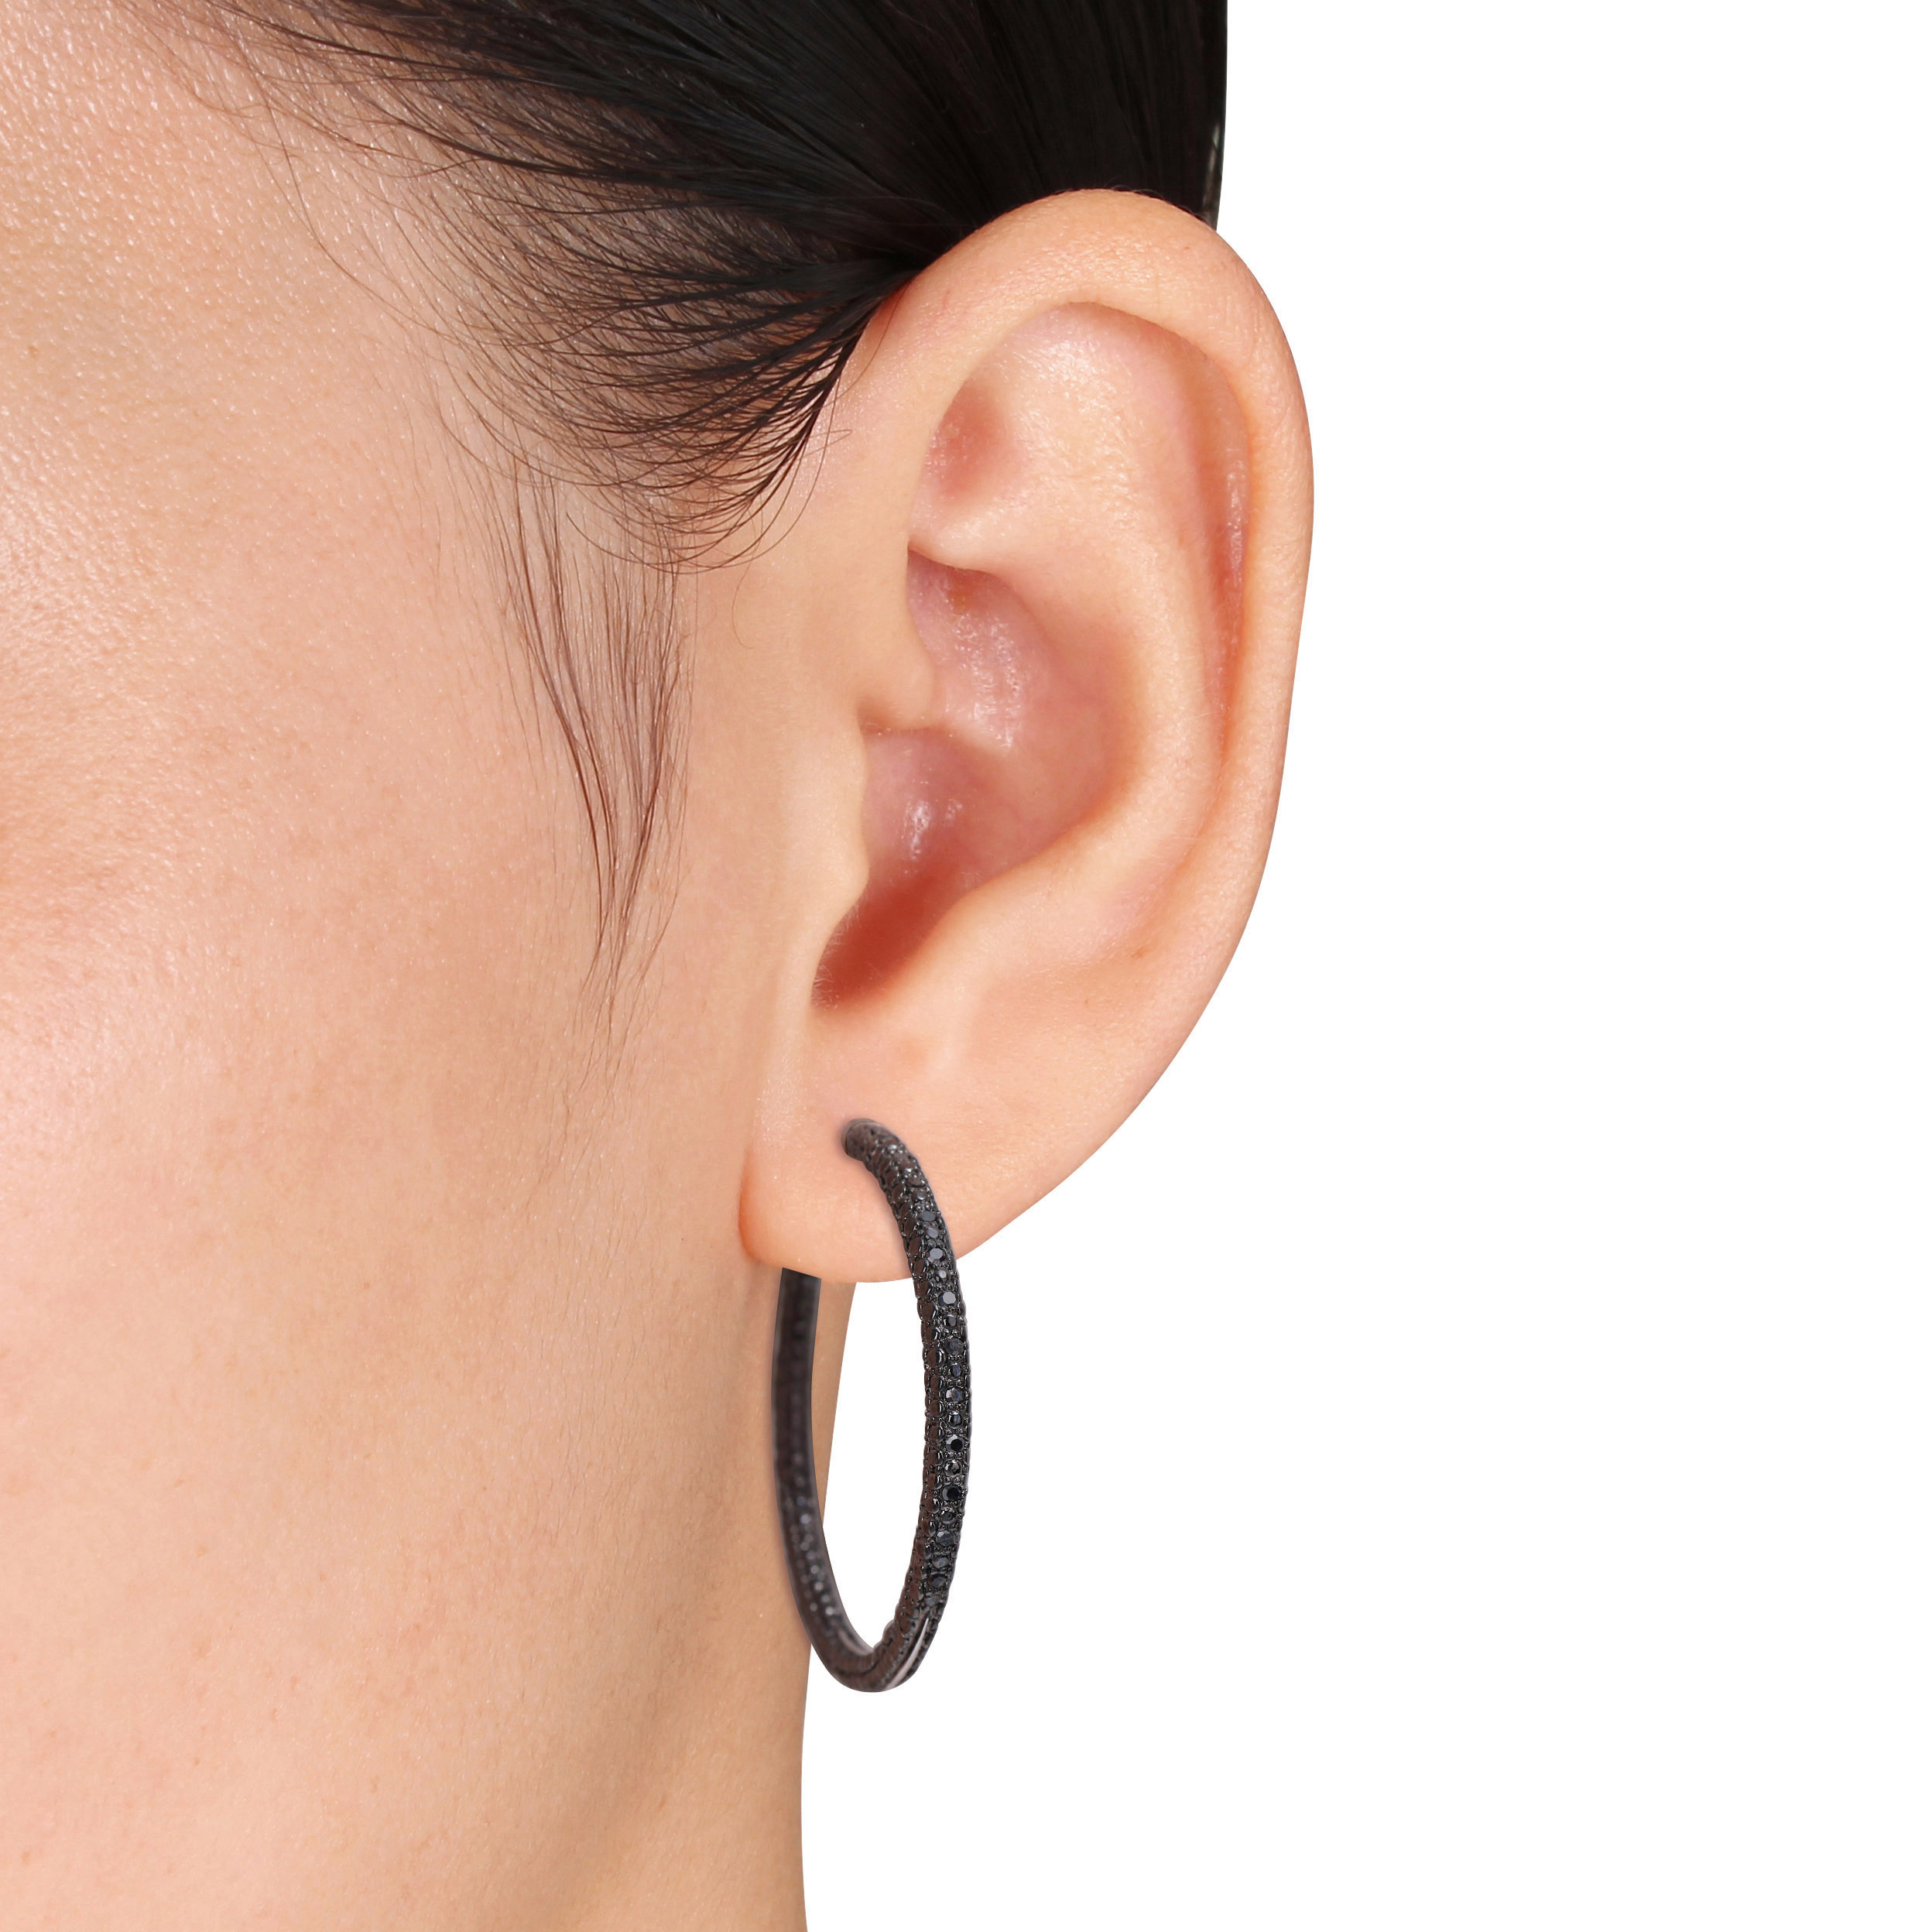 1/4 CT TW Black Diamond Hoop Earrings in Sterling Silver with Black Rhodium Plating